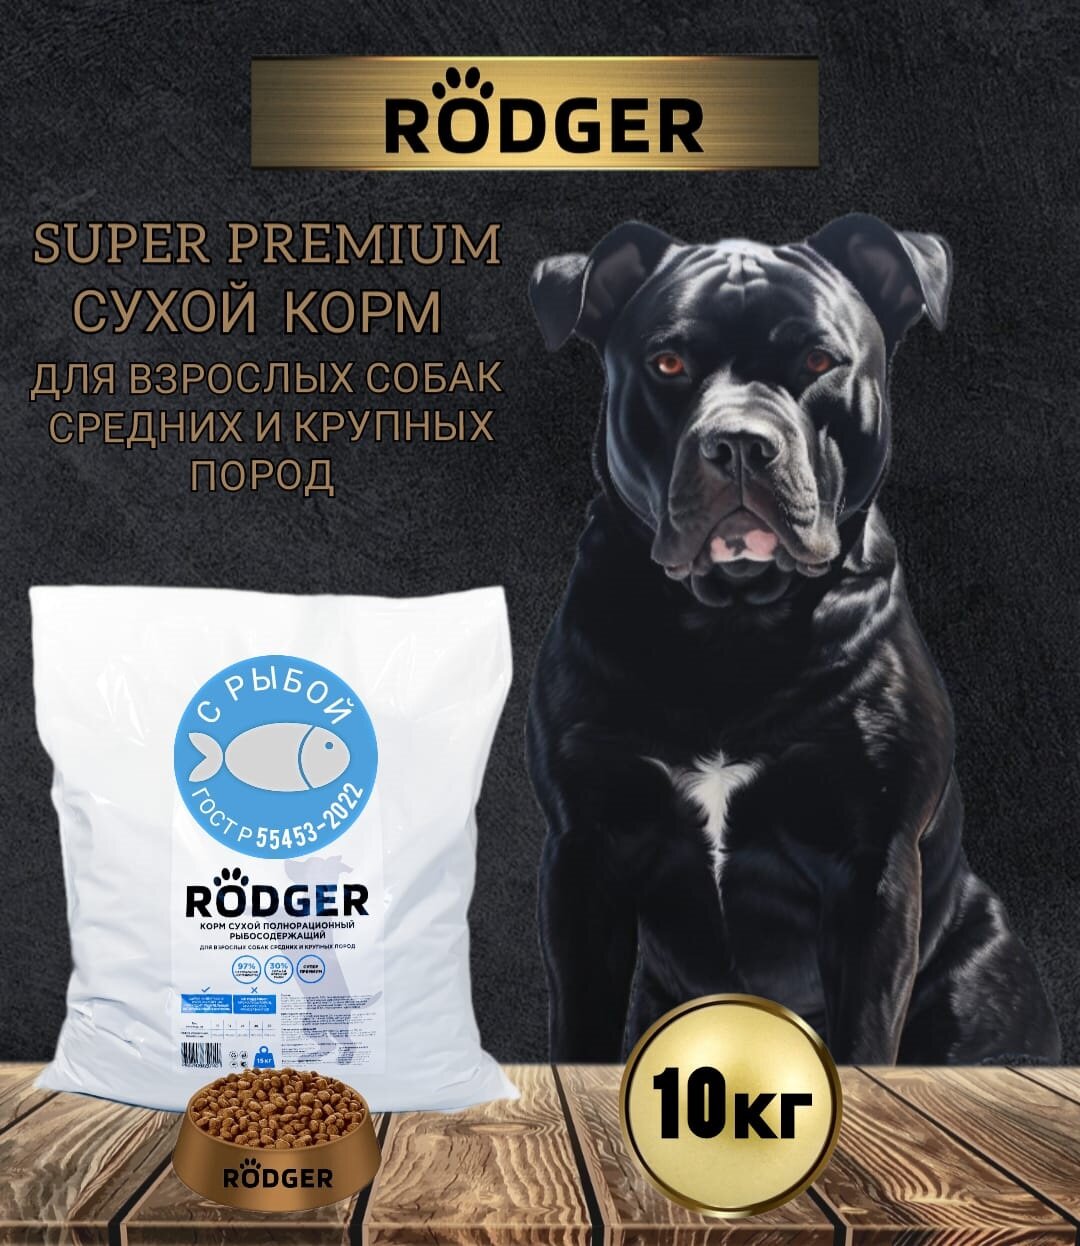 RODGER Сухой Корм SUPER PREMIUM, для собак средних и крупных пород, рыба 10кг